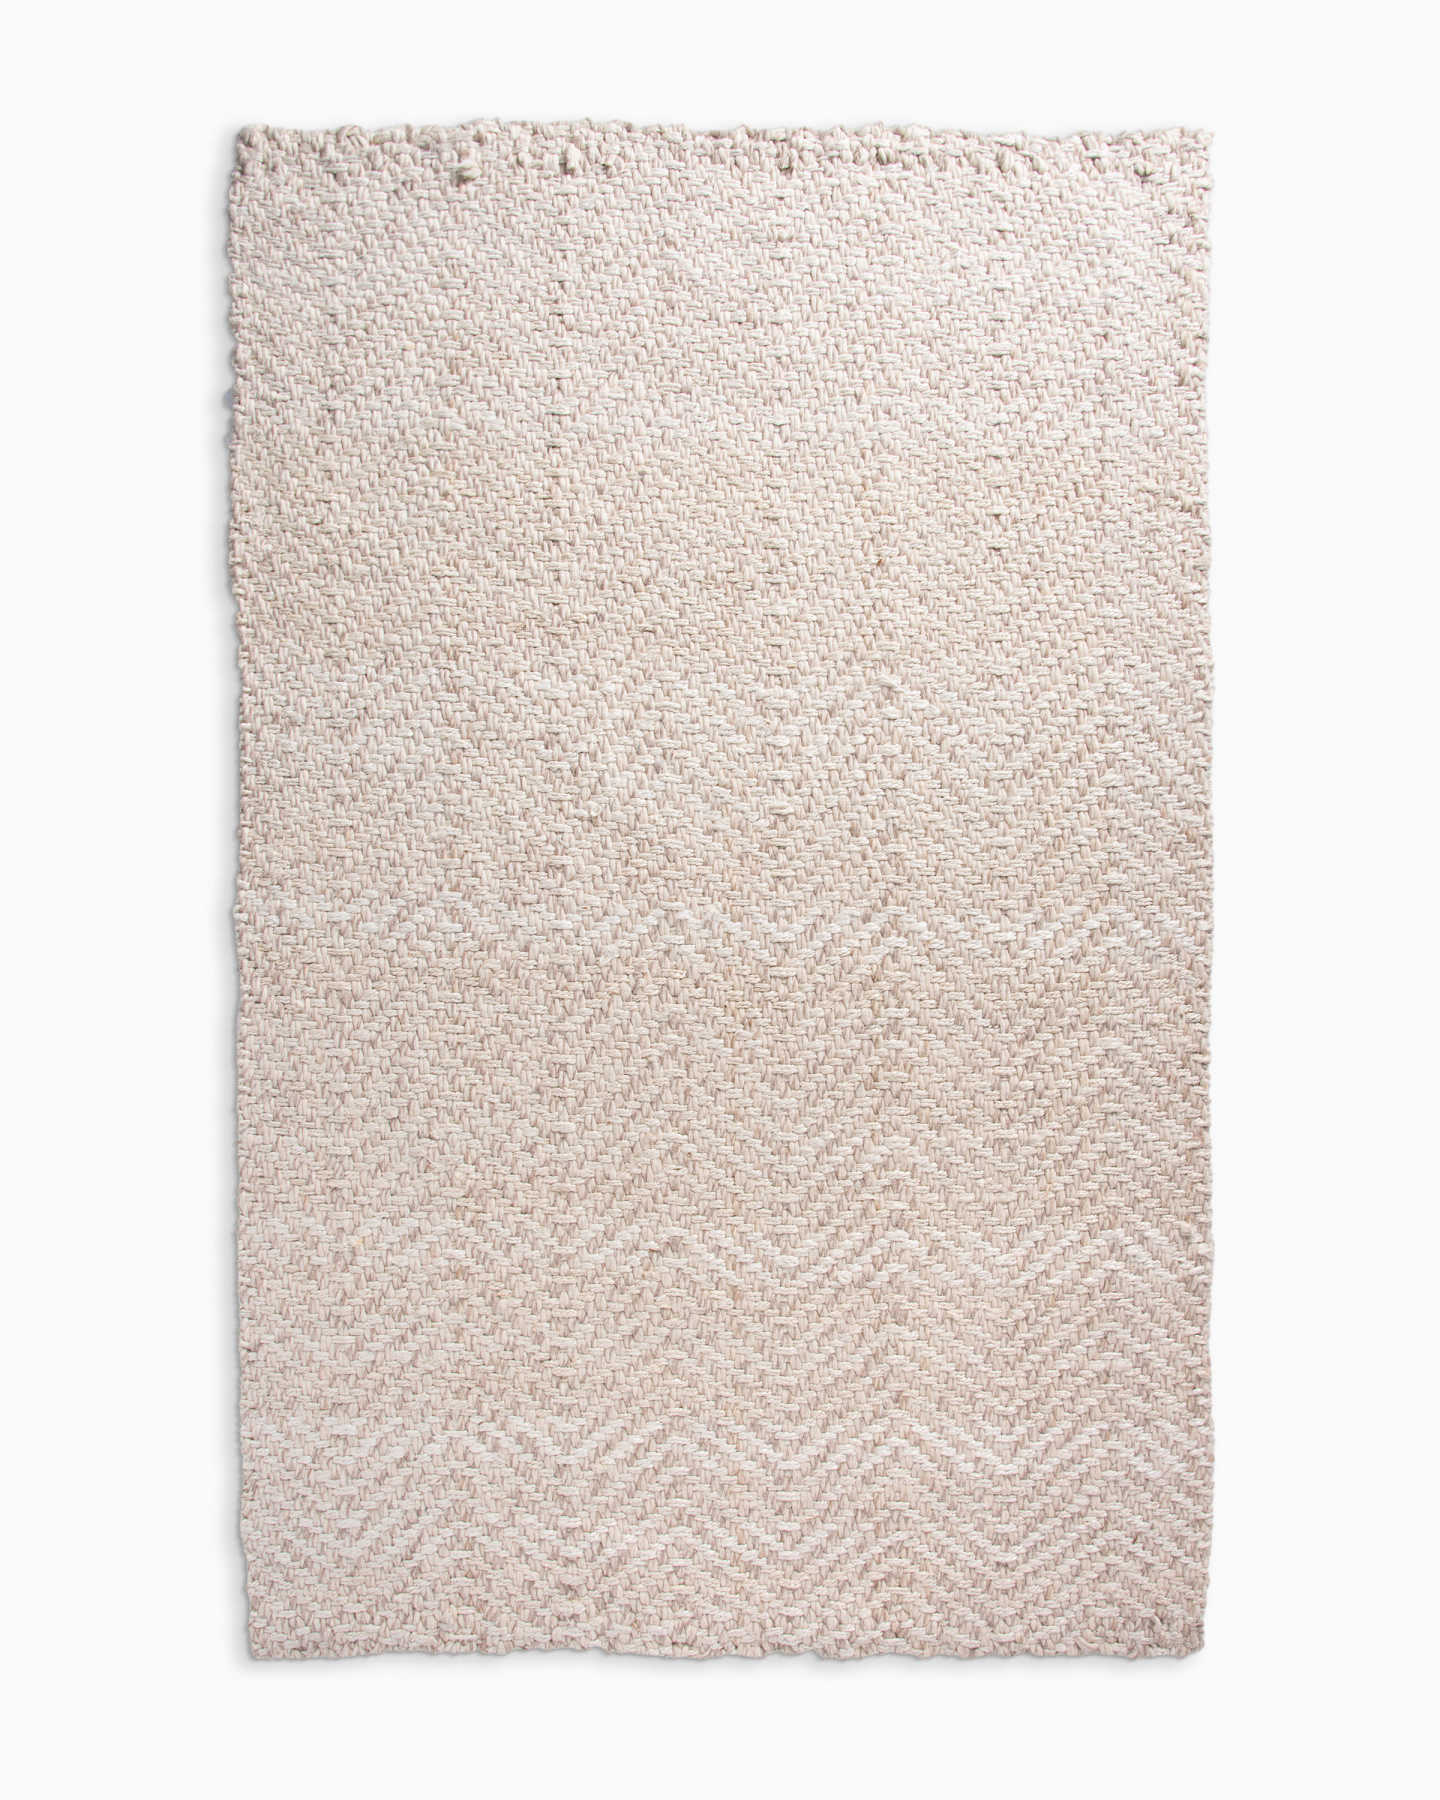 Wool and Jute Herringbone Rug - Natural/White - 0